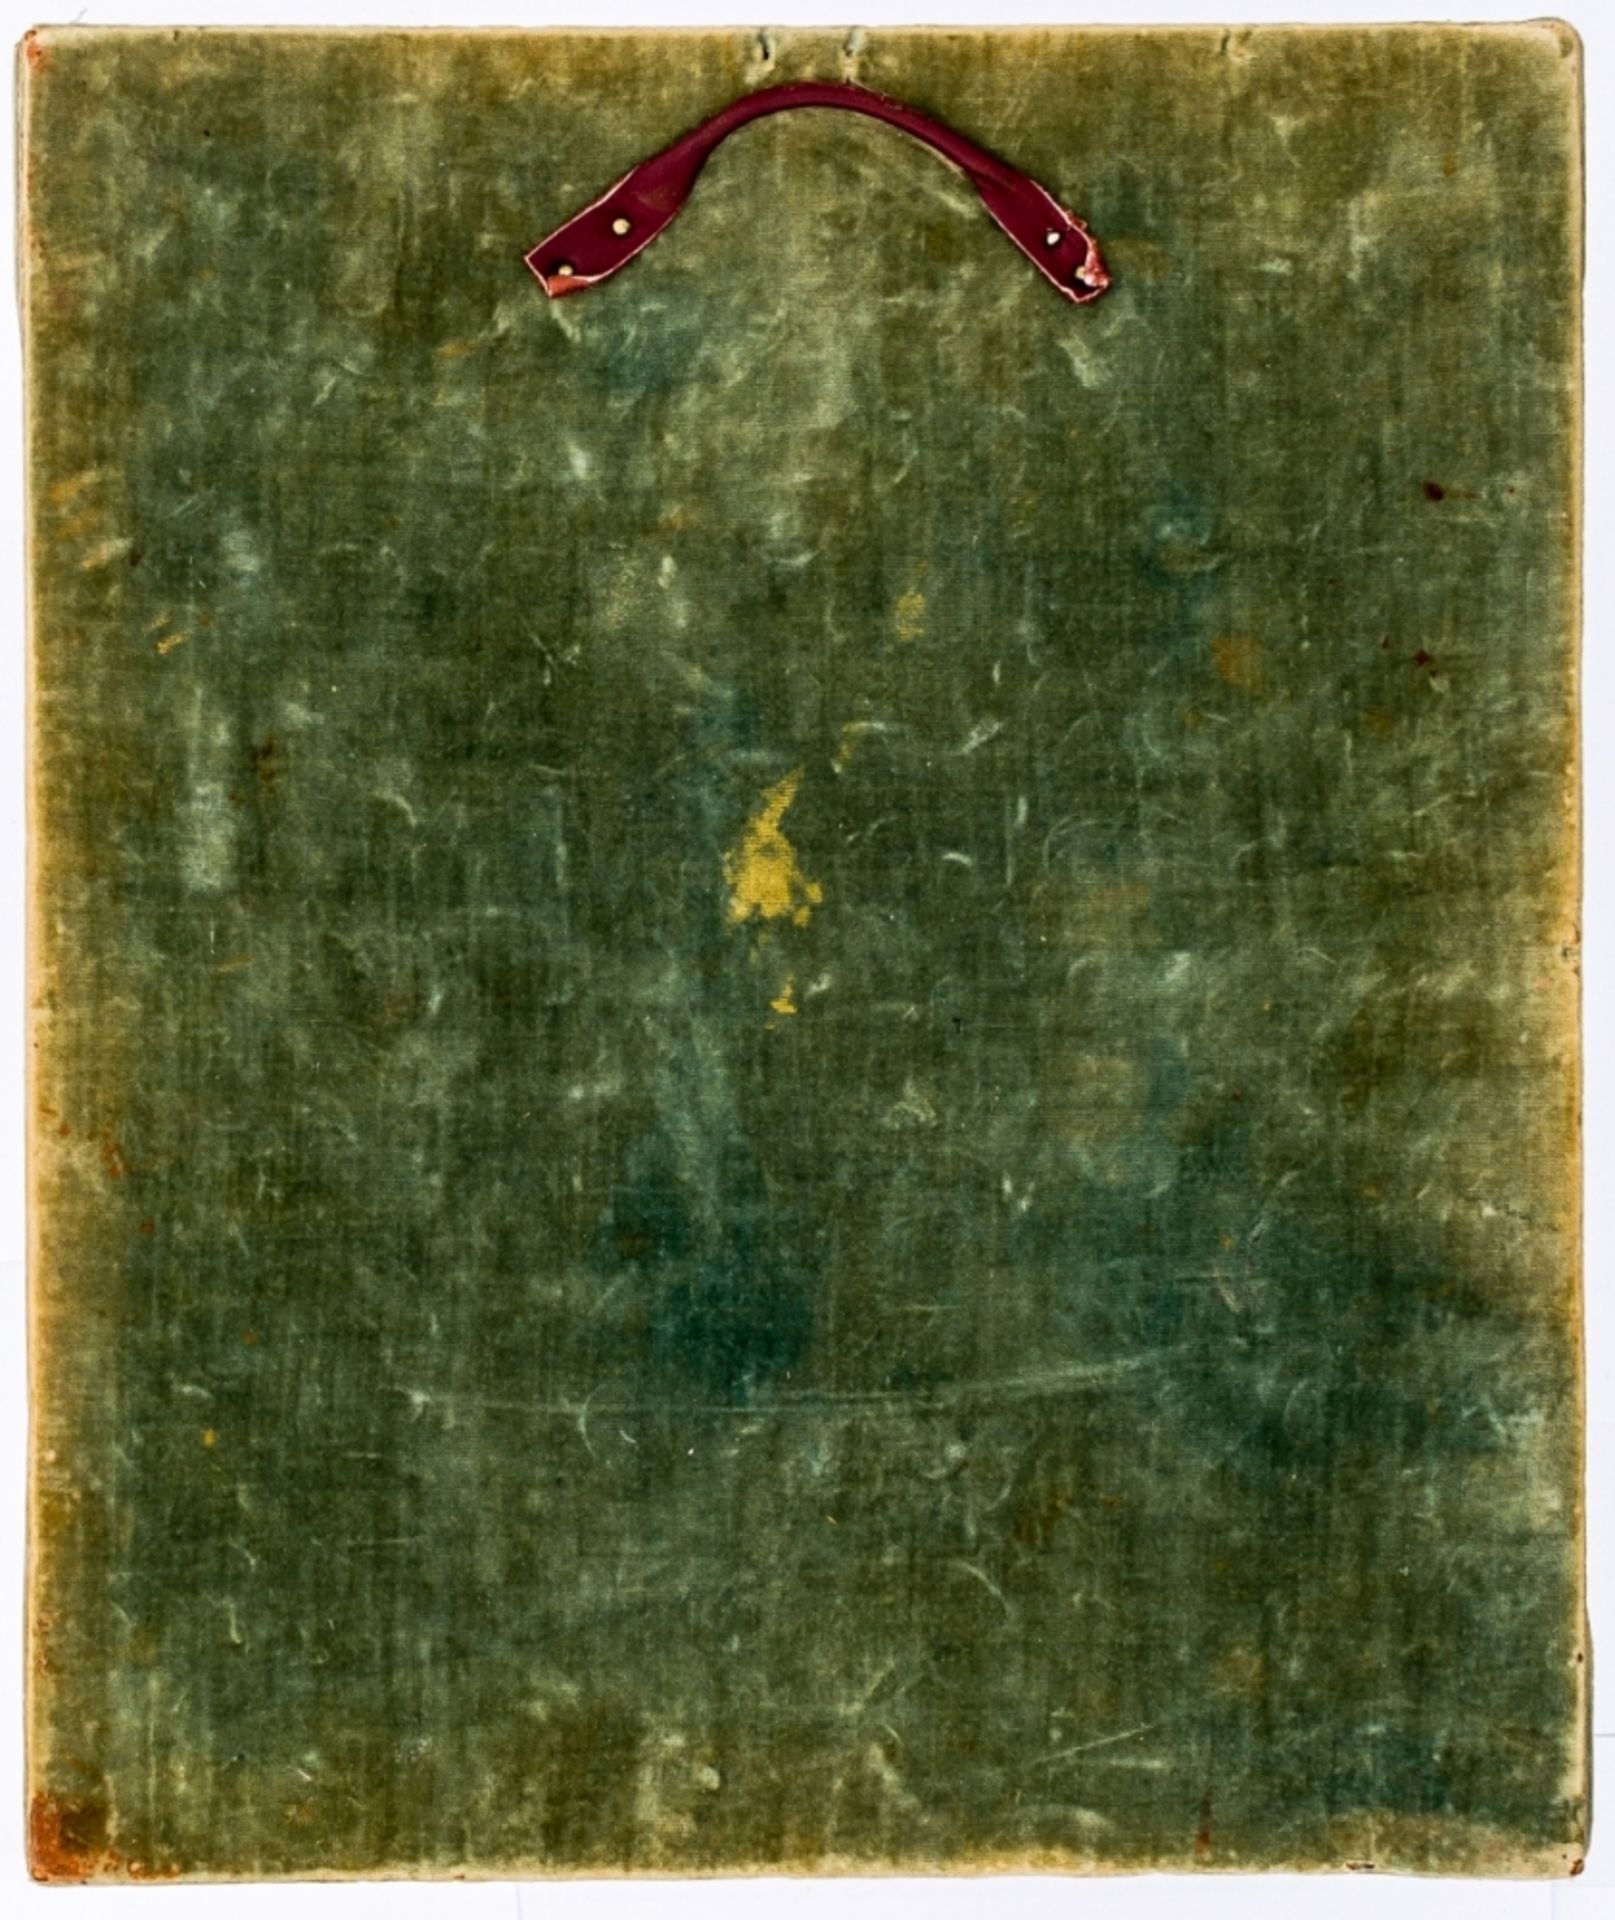 GOTTESMUTTER VON KASANRussische Ikone mit vergoldetem Silberoklad (798g), Silber-Filigran-Arbeit und - Bild 3 aus 4